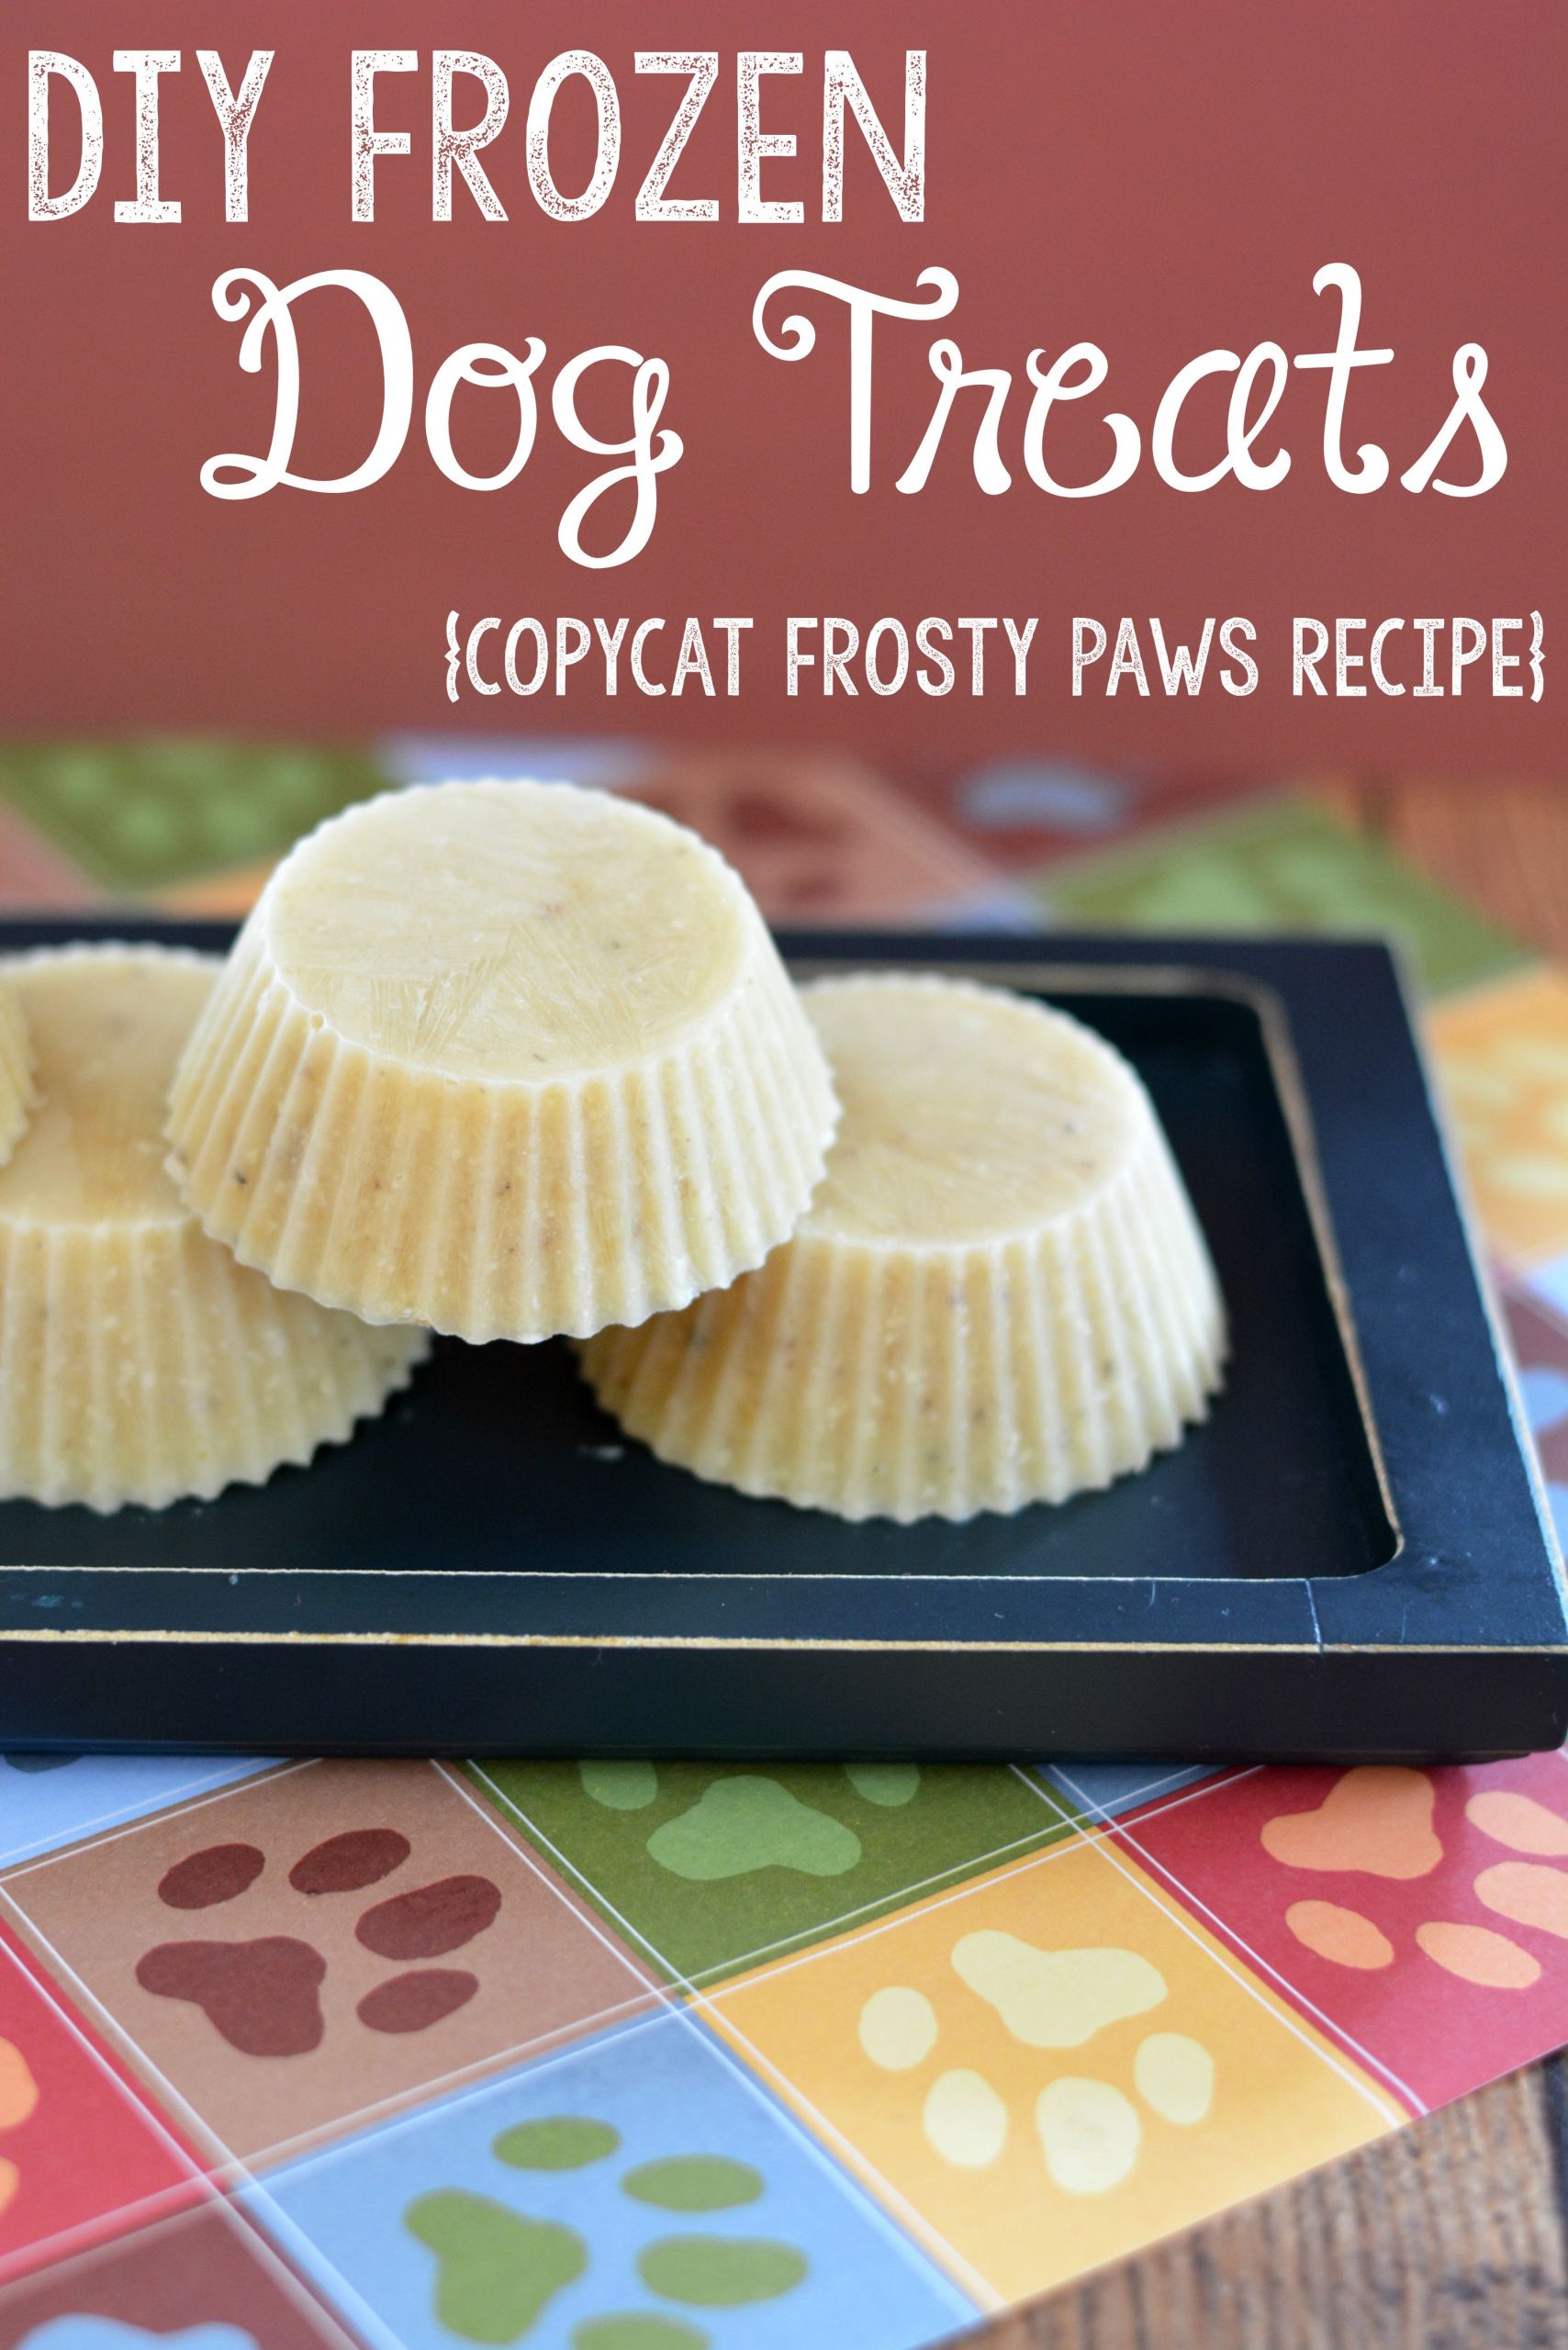 DIY Frozen Dog Treats
 DIY Frozen Dog Treats Recipe Copycat Frosty Paws Recipe